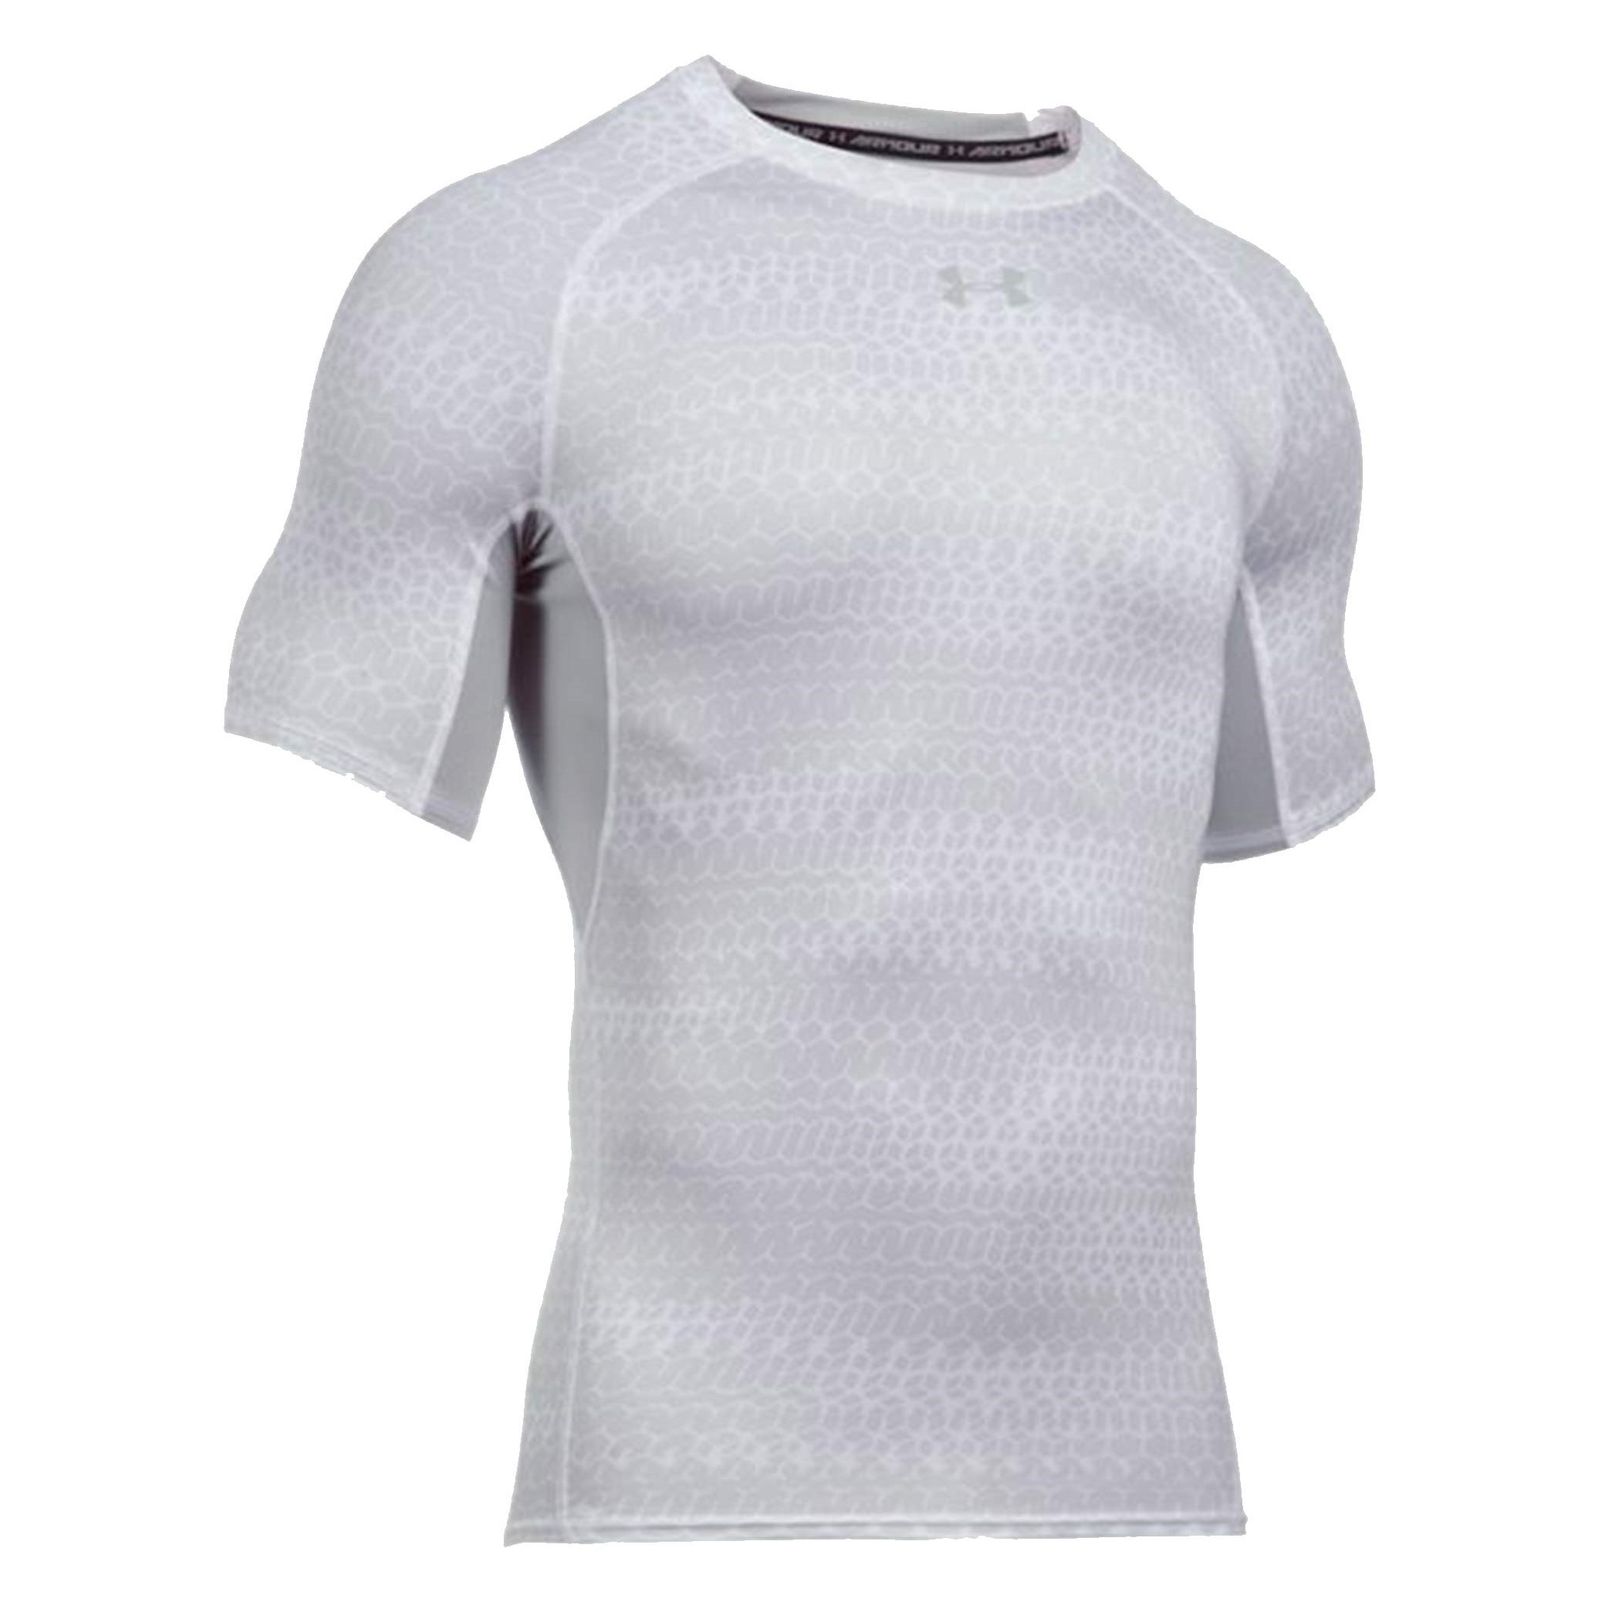 تی شرت ورزشی یقه گرد مردانه - آندر آرمور - سفيد - 1